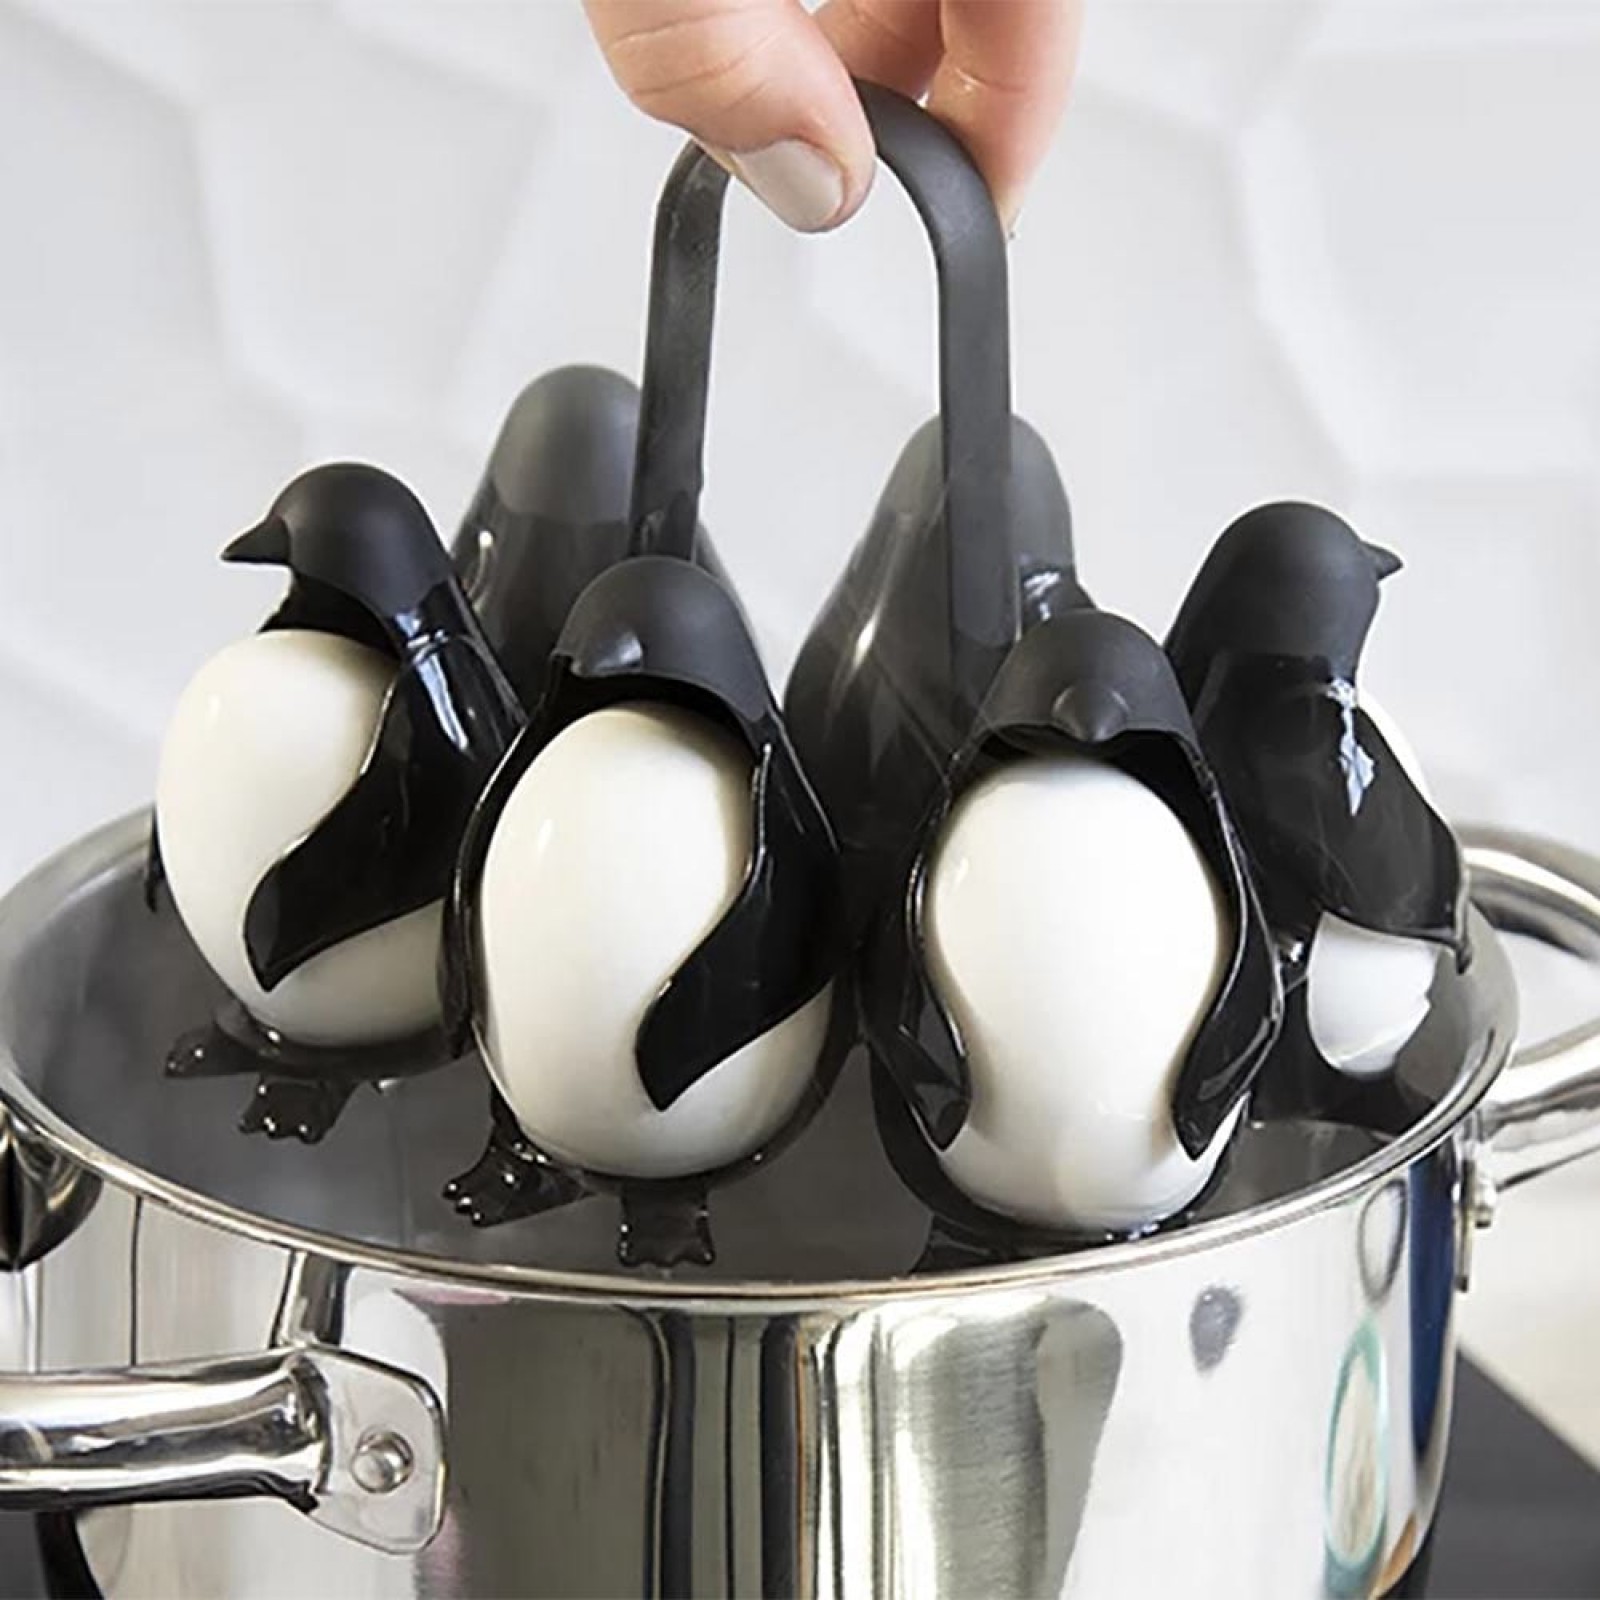 Penguin Multi Egg Cooker Holder